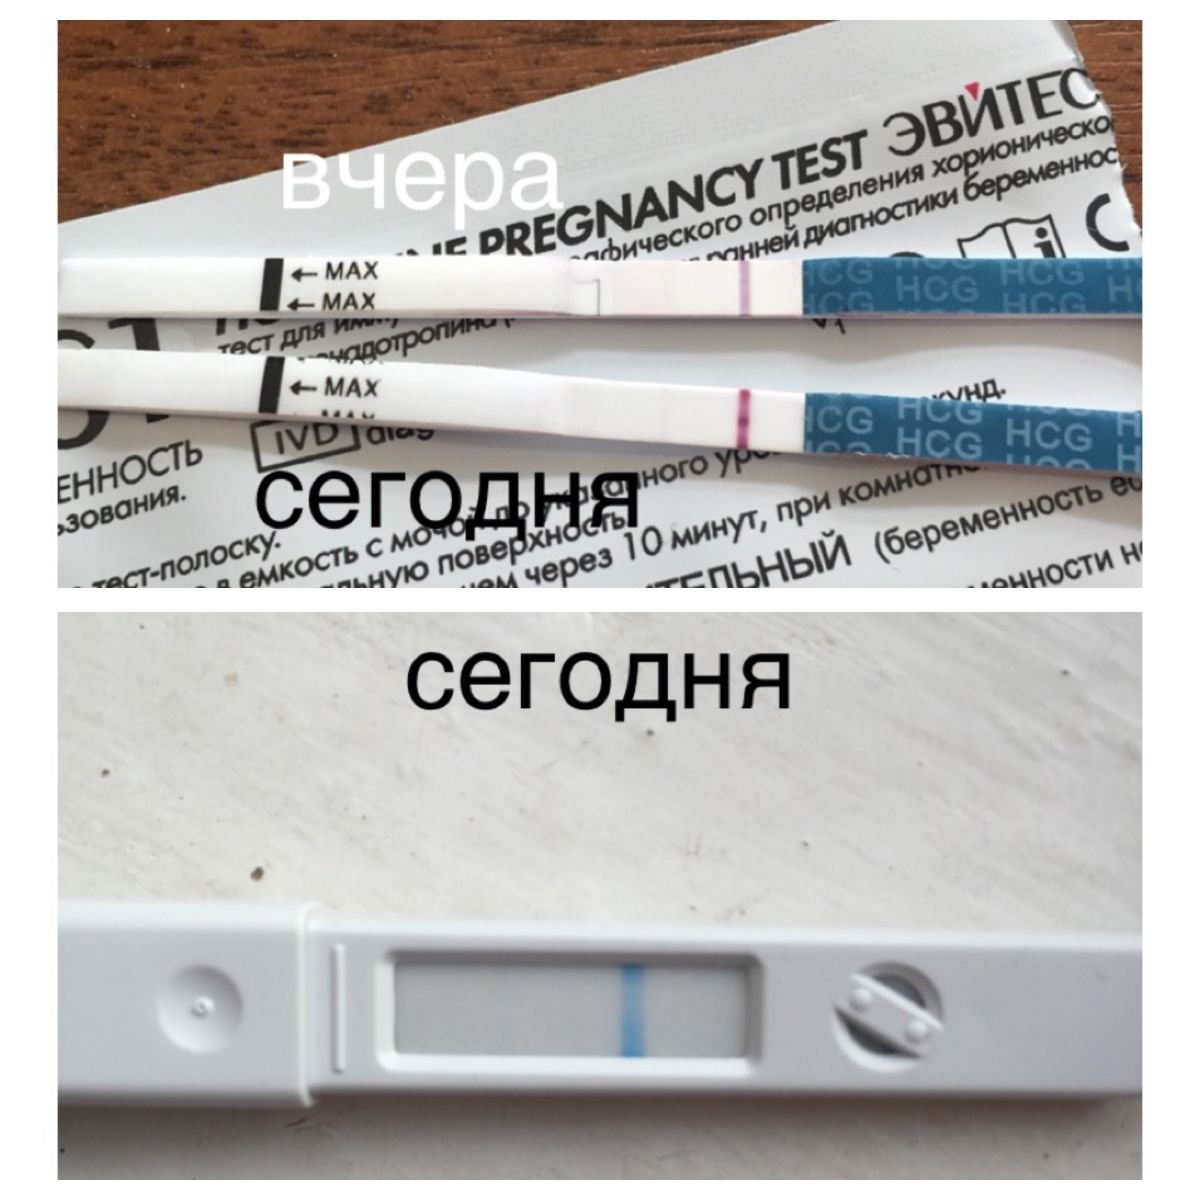 Когда после овуляции делать тест на беременность. Тест на беременность до задержки. Тесты на беременность по дням. Тест на беременность после задержки. Тест после полового акта.